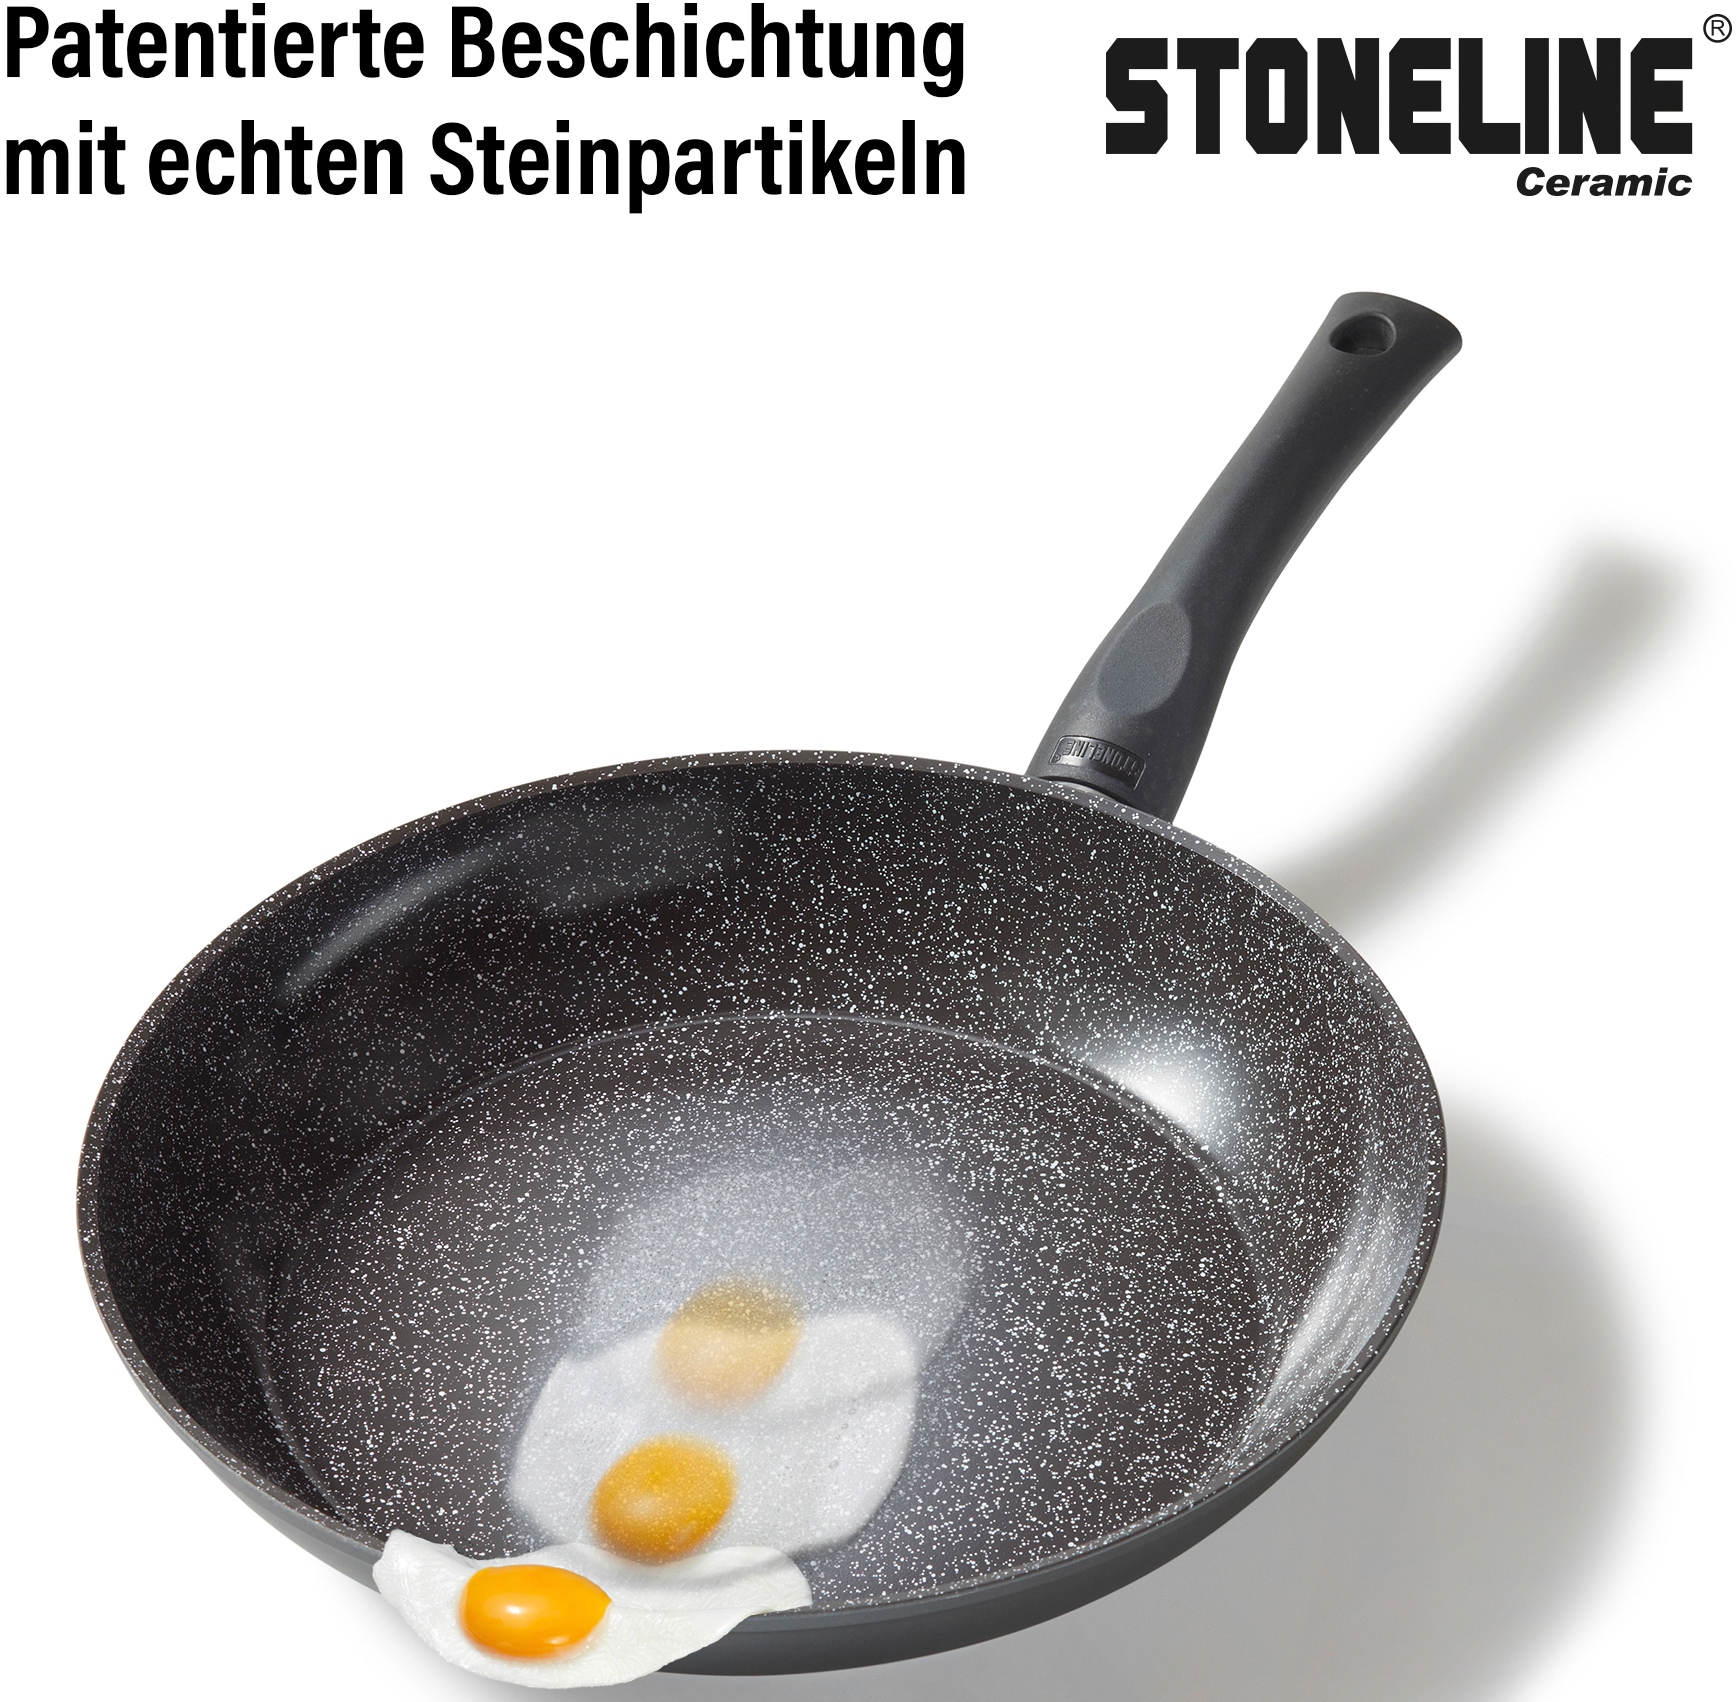 STONELINE Pfannen-Set »CERAMIC«, Aluminium, (Set, 3 tlg., je 1 Bratpfanne Ø 20/24/28 cm, H: 4,5/5/5,5 cm, - 1,0/1,7/2,7 l), Induktion